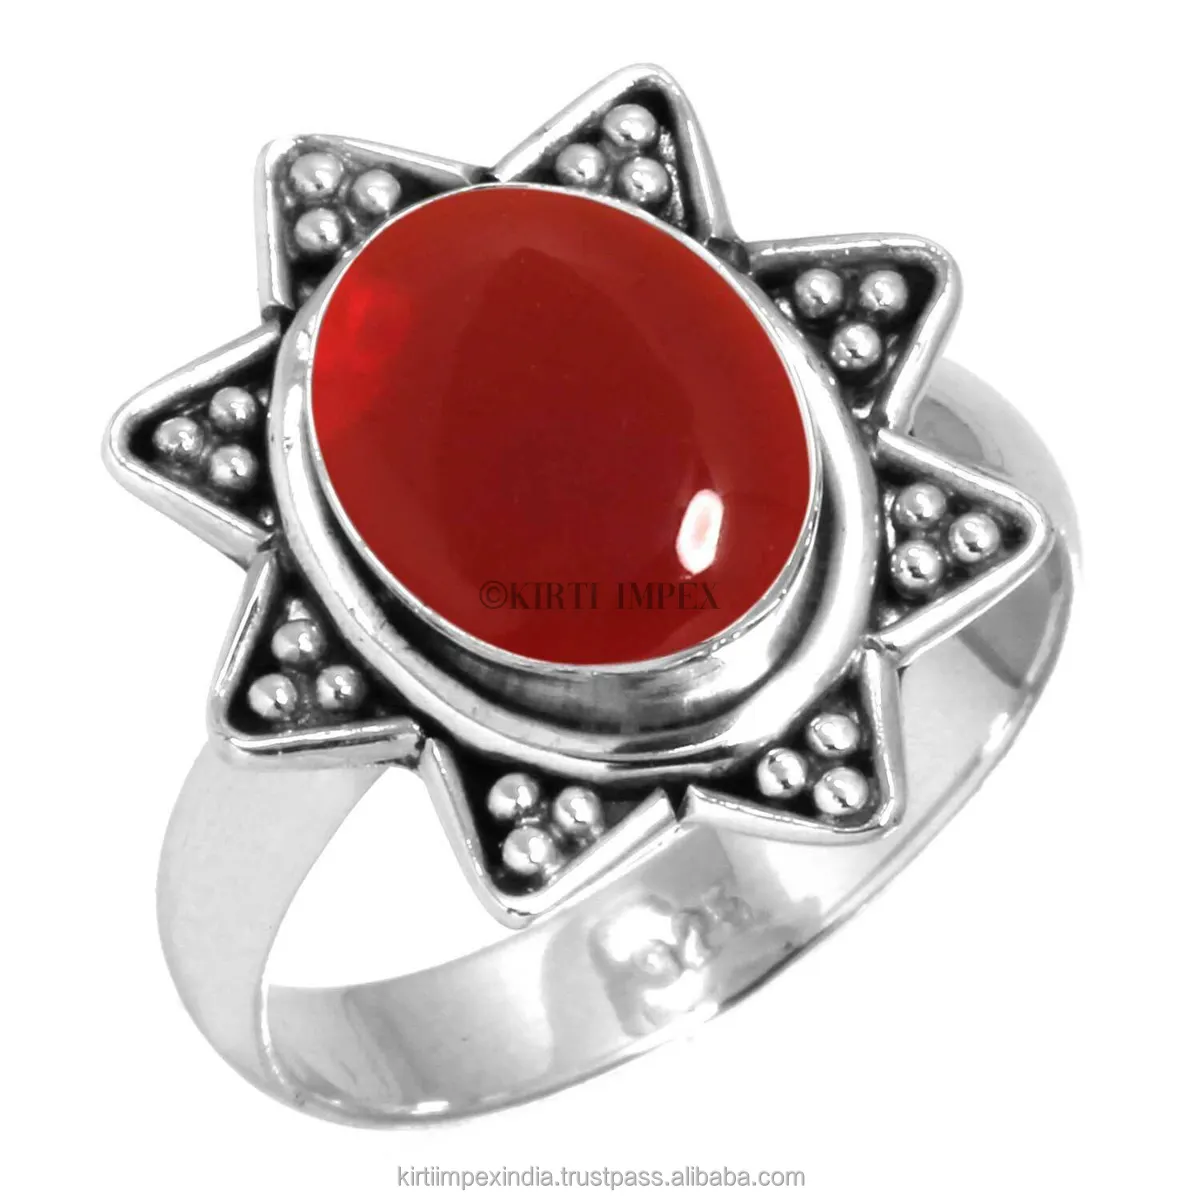 One Size Handgemaakte Rode Onyx Diverse Ontwerpen Zilveren Overlay Boho Ringen Vintage Vrouwen Sieraden Voor Retailers